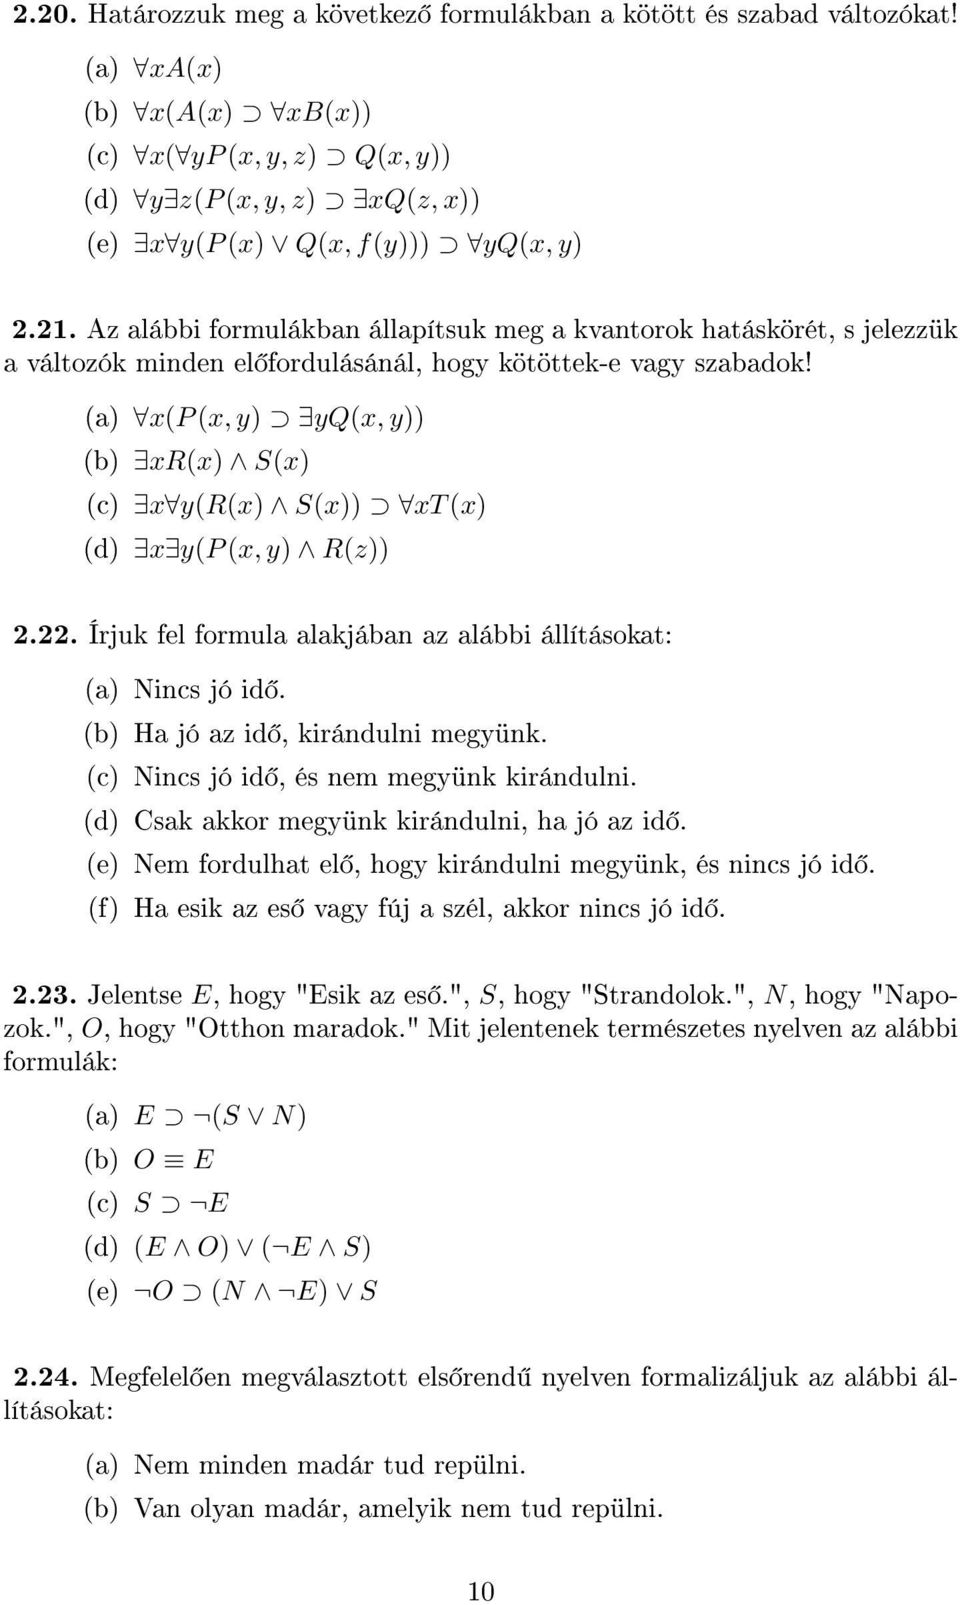 (a) x(p (x, y) yq(x, y)) (b) xr(x) S(x) (c) x y(r(x) S(x)) xt (x) (d) x y(p (x, y) R(z)) 2.22. Írjuk fel formula alakjában az alábbi állításokat: (a) Nincs jó id. (b) Ha jó az id, kirándulni megyünk.